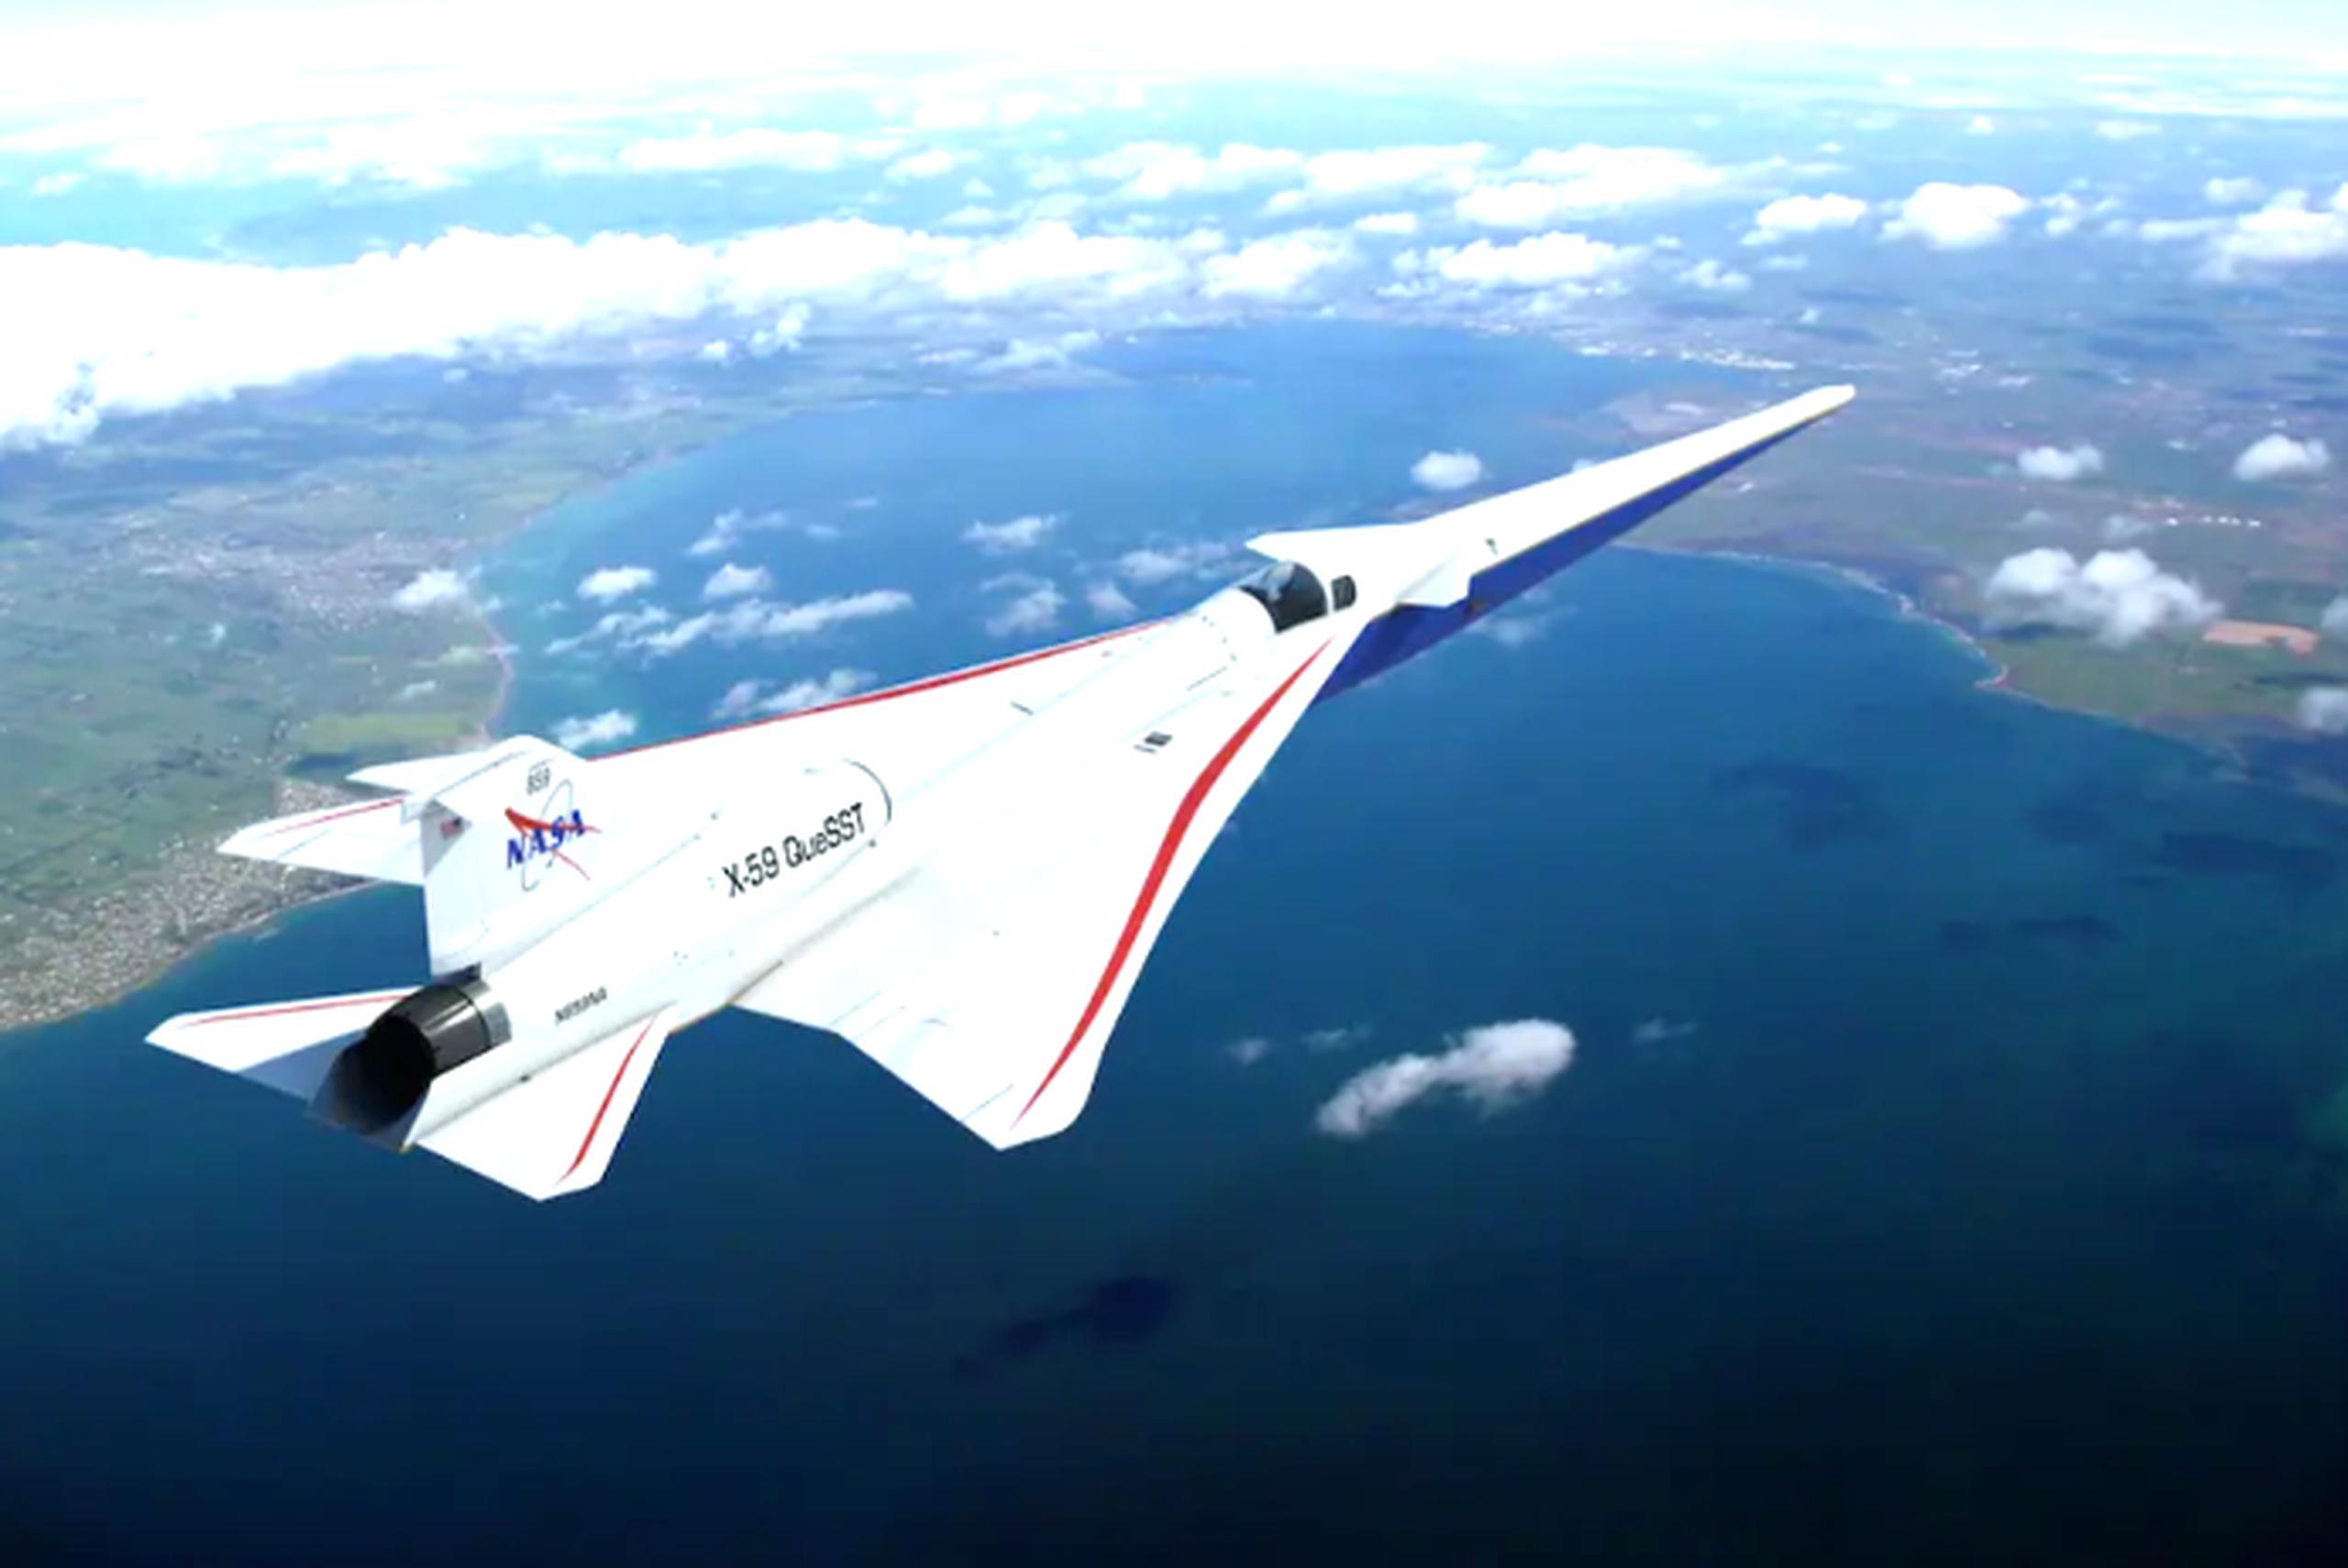 Con 30 metros de largo y 4.27 metros de alto, el X-59 podrá alcanzar una altitud de crucero de 16,764 metros, y volar a 1760 kilómetros por hora (equivalente a Mach 1.42).